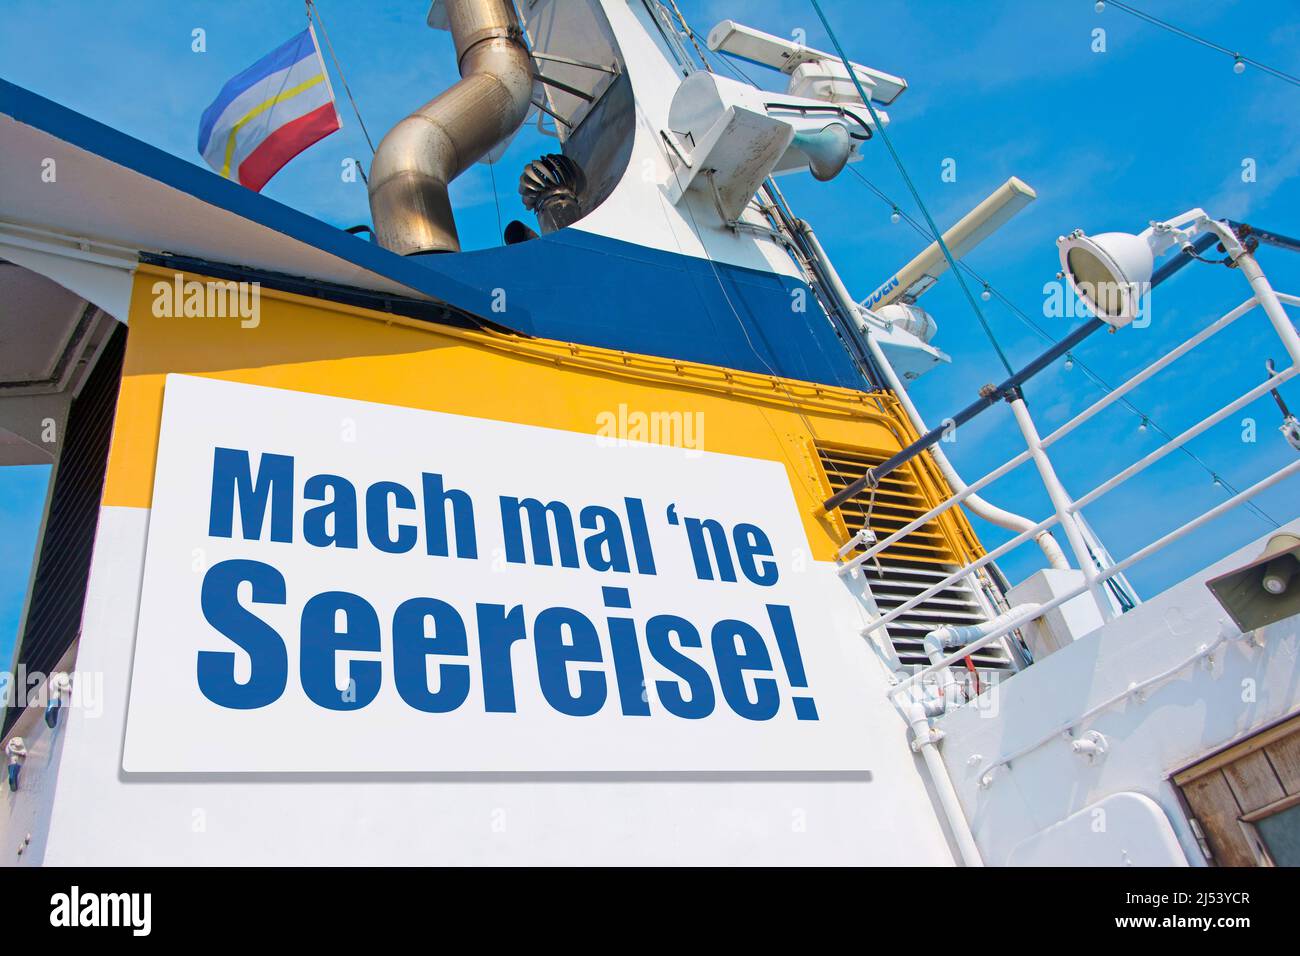 Voyage navire avec panneau publicitaire allemand 'Mach mal 'ne Seereise!' (Faites un voyage en mer!) Banque D'Images